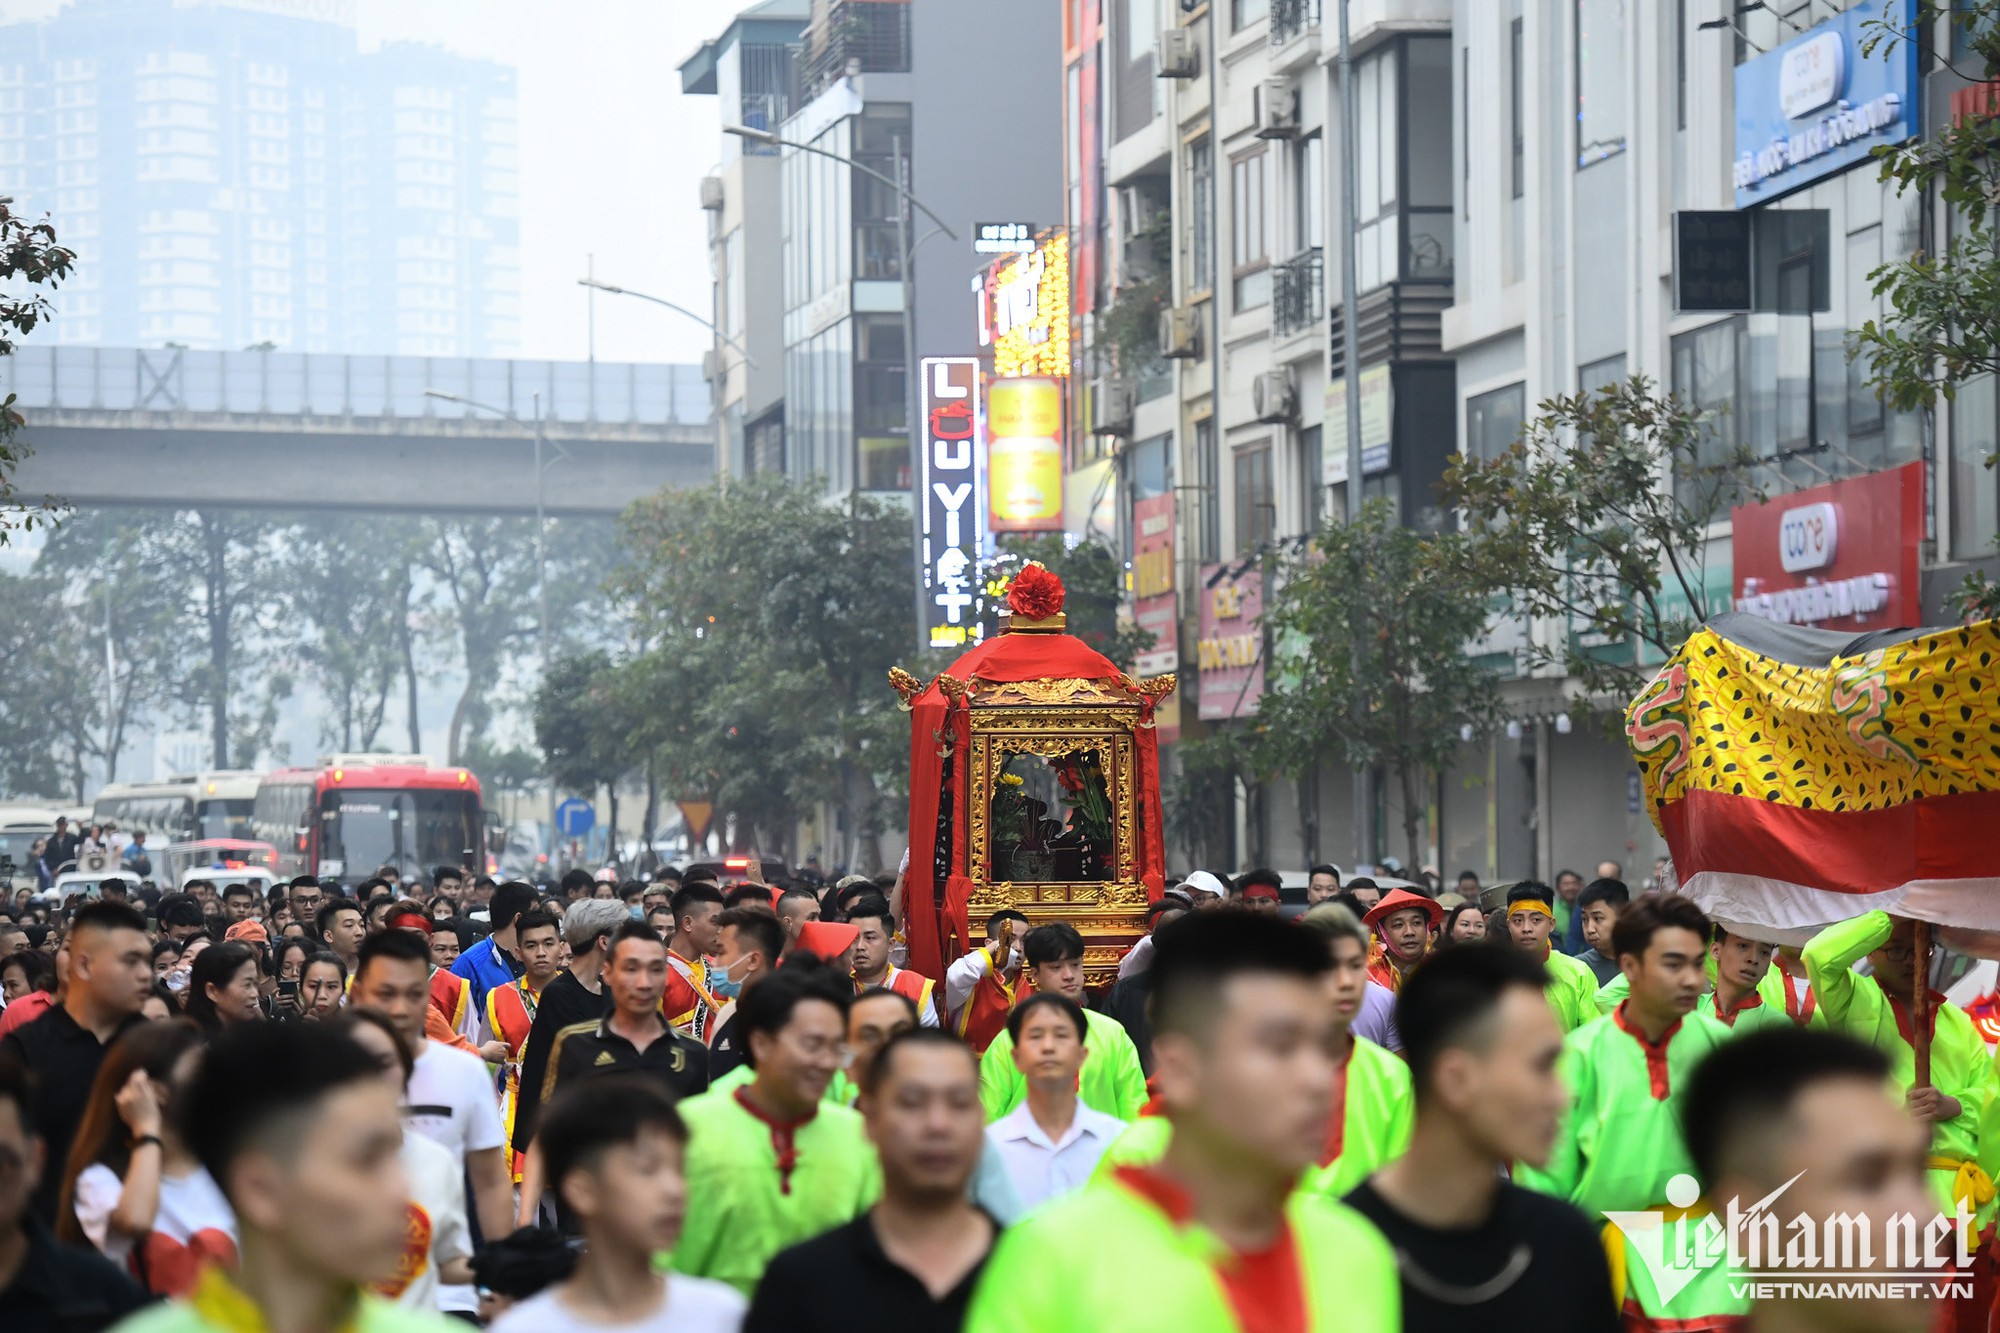 Kỳ lạ màn rước kiệu như chạy marathon trên đường phố Hà Nội - Ảnh 2.